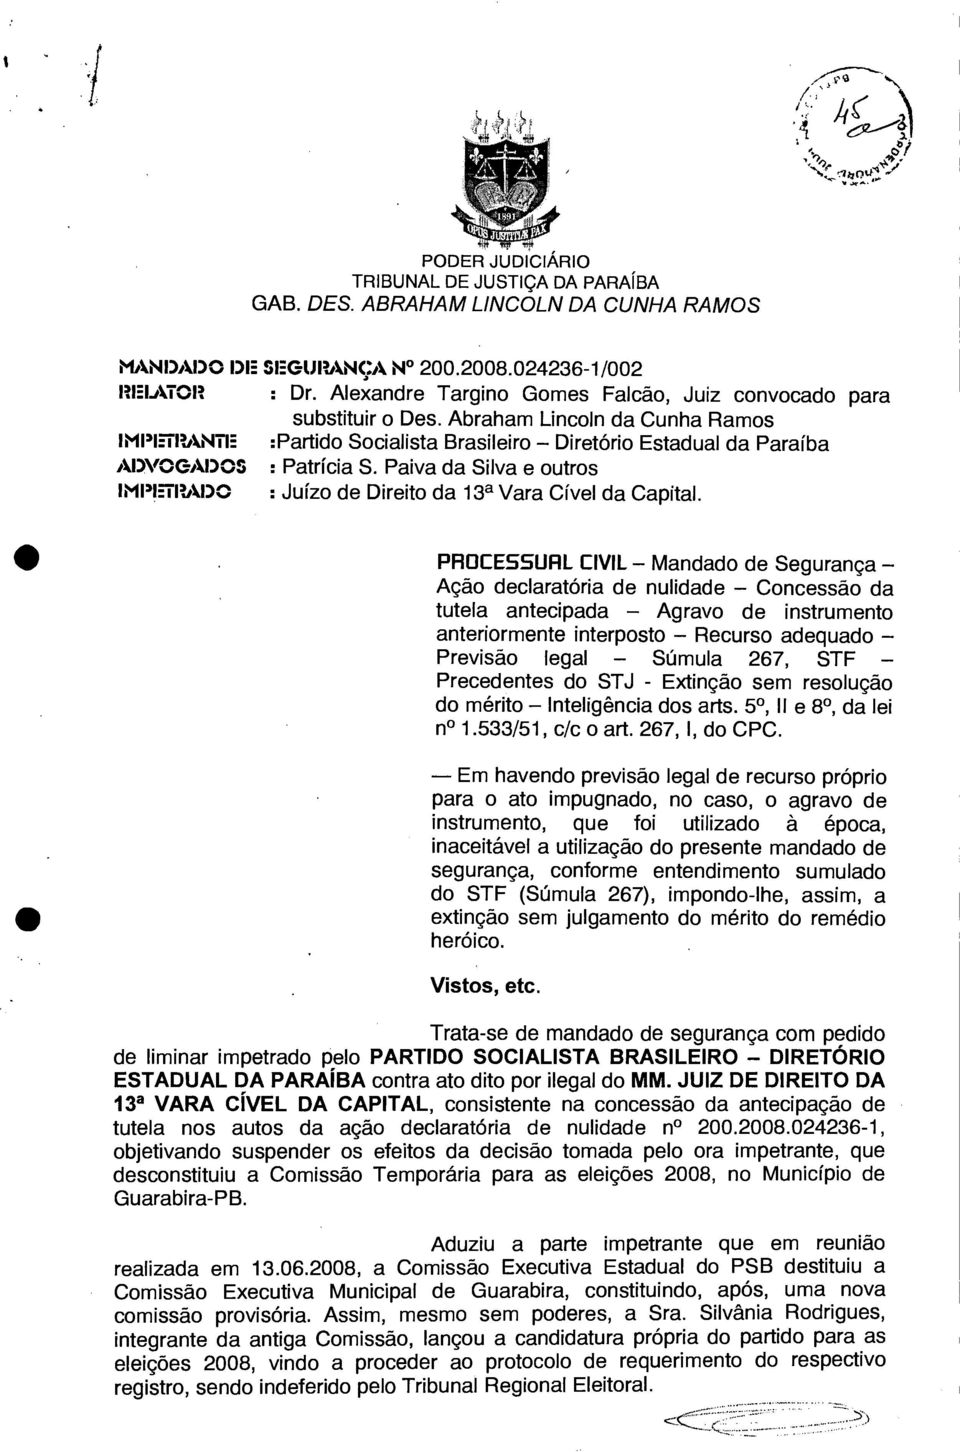 Paiva da Silva e outros : Juízo de Direito da 13a Vara Cível da Capital.